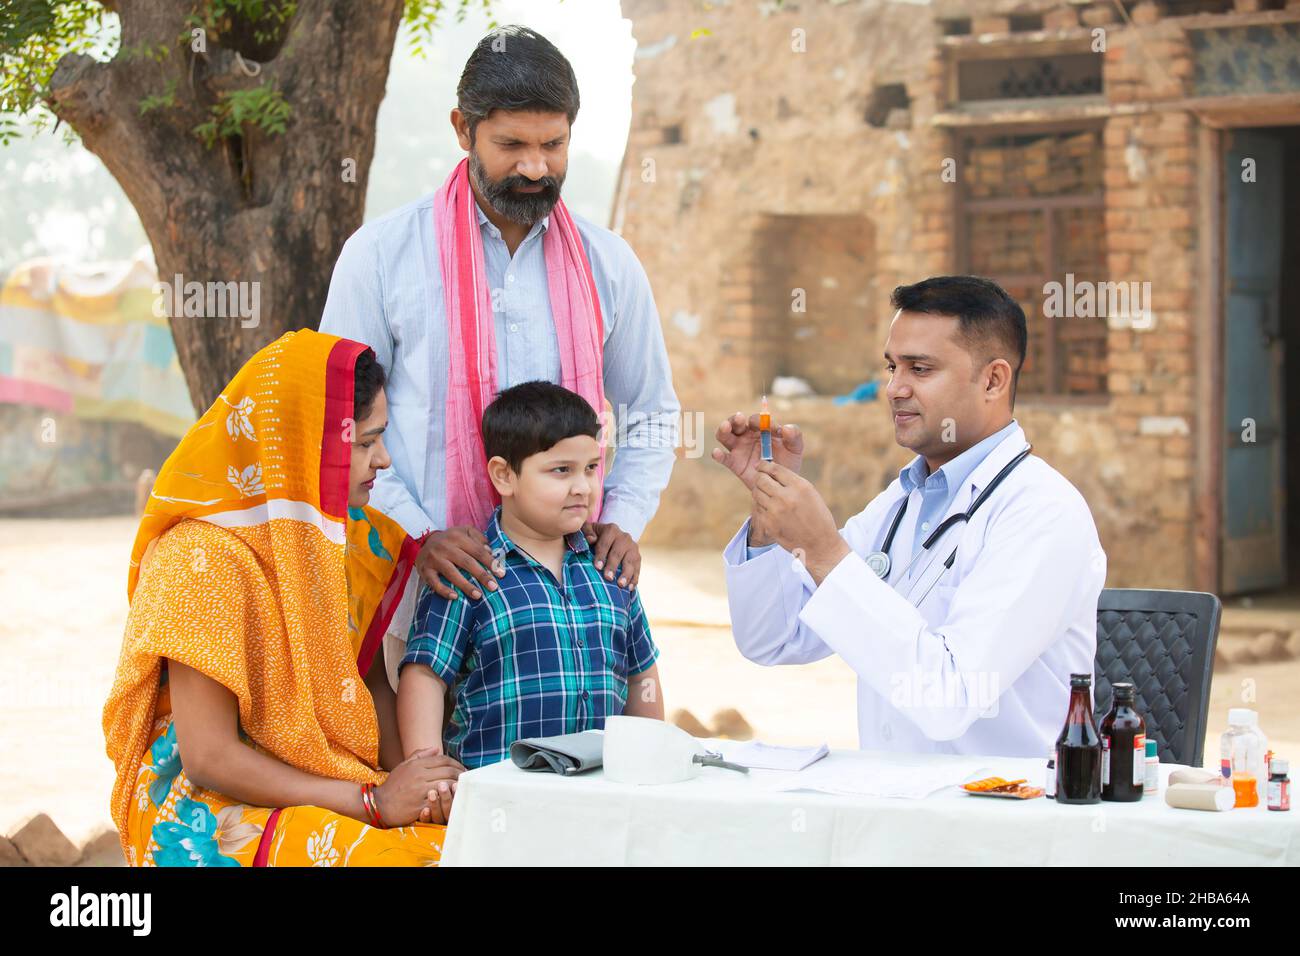 Médecin indien avec seringue ou injection médicale en main, petite patiente de garçon au village, femme portant sari avec son mari et son fils assis à côté Banque D'Images